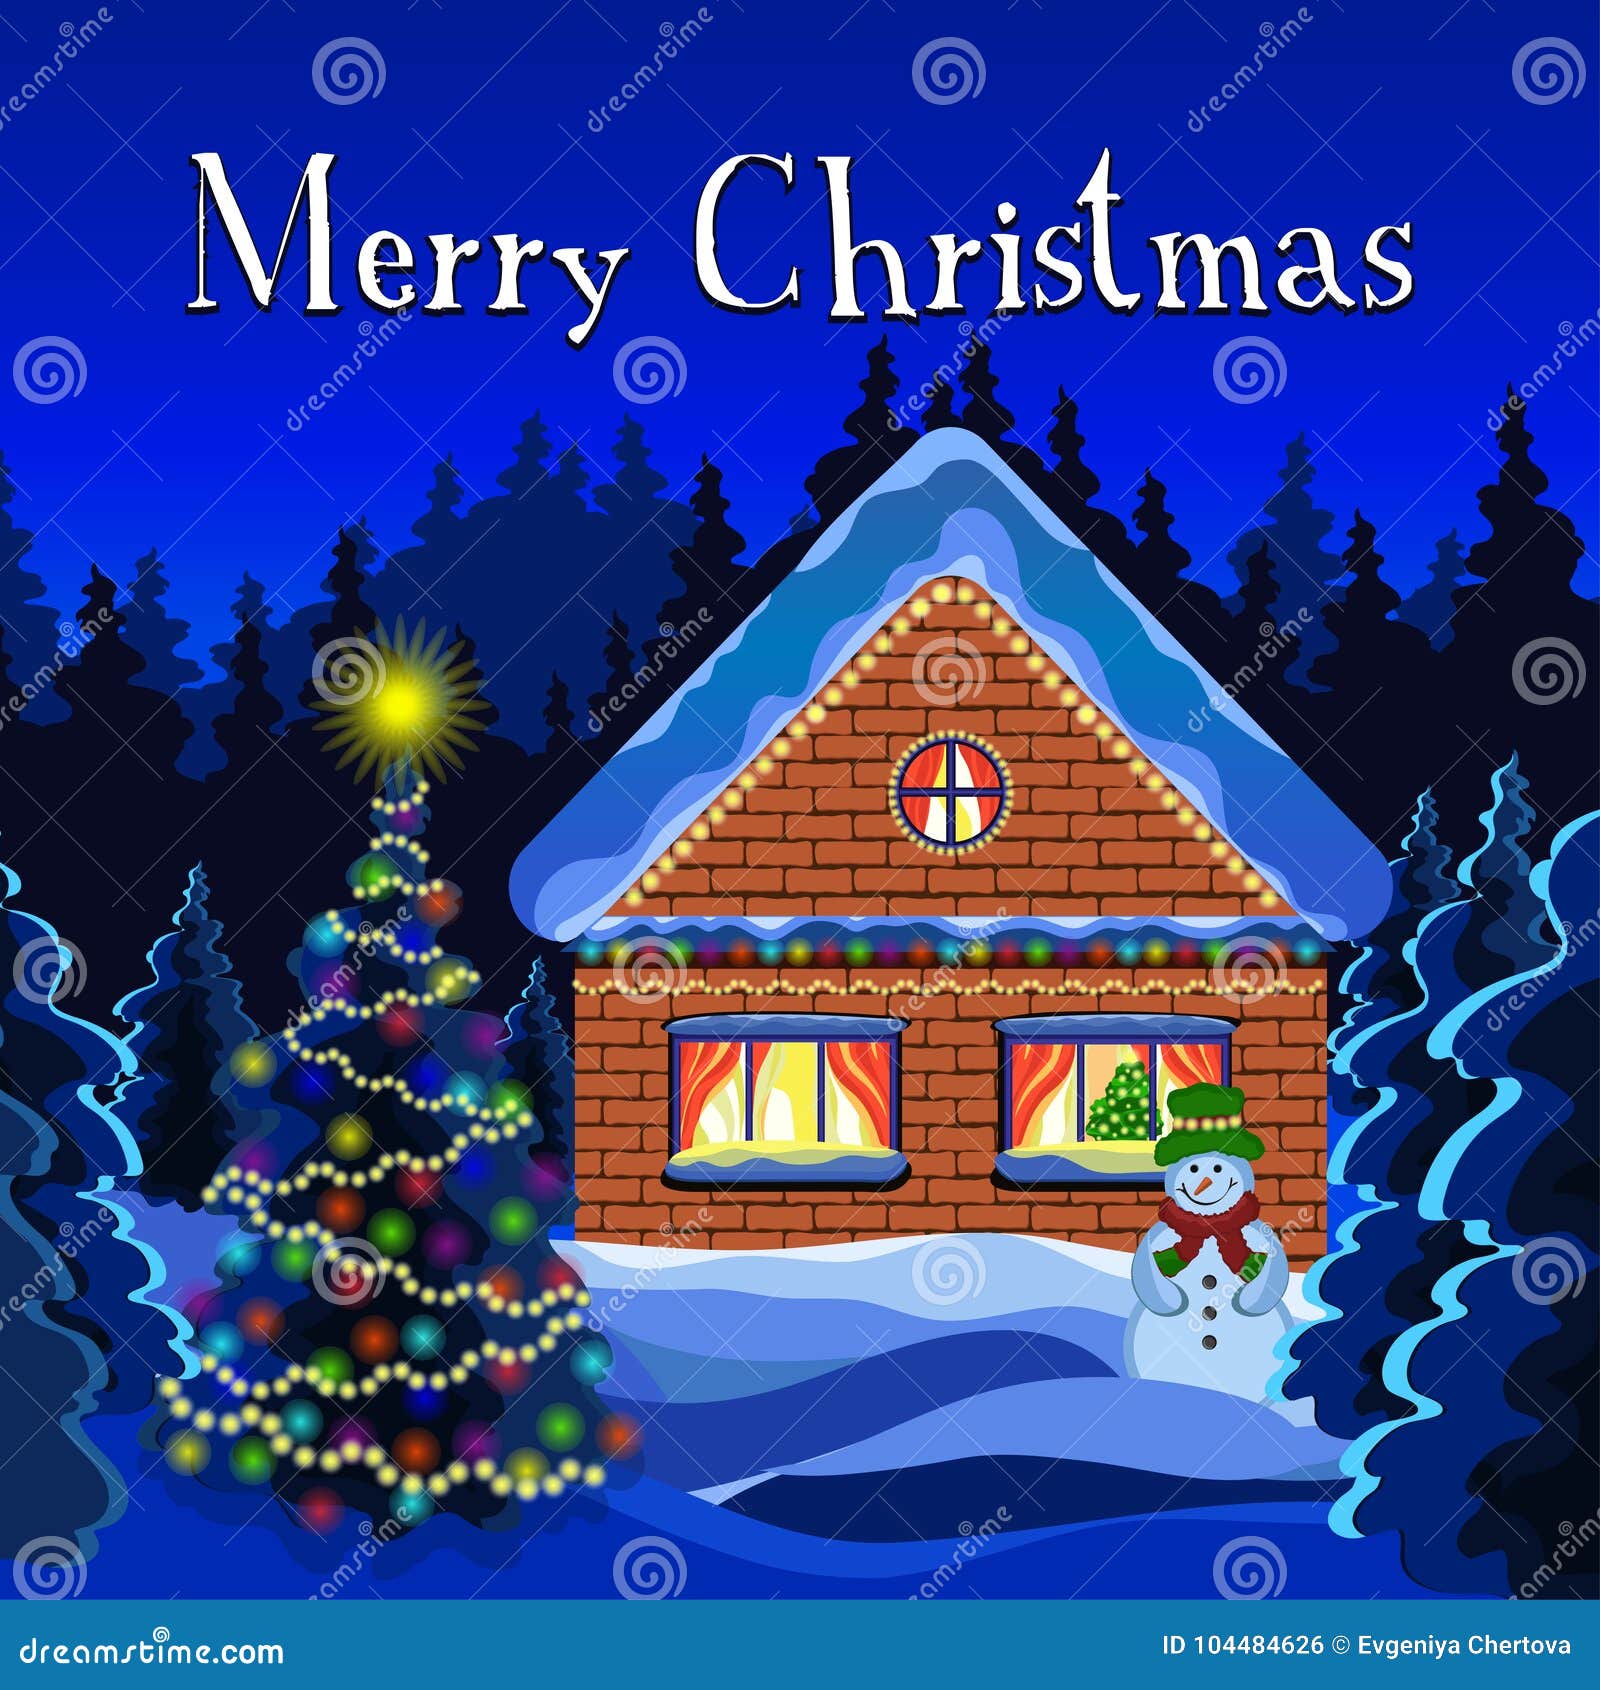 Buon Natale Paesaggi.Il Buon Natale Carda Disegno Di Vettore Del Paesaggio Di Natale Dell Inverno Foresta Della Neve Di Inverno Di Notte Decorata Co Illustrazione Vettoriale Illustrazione Di Festa Disegno 104484626